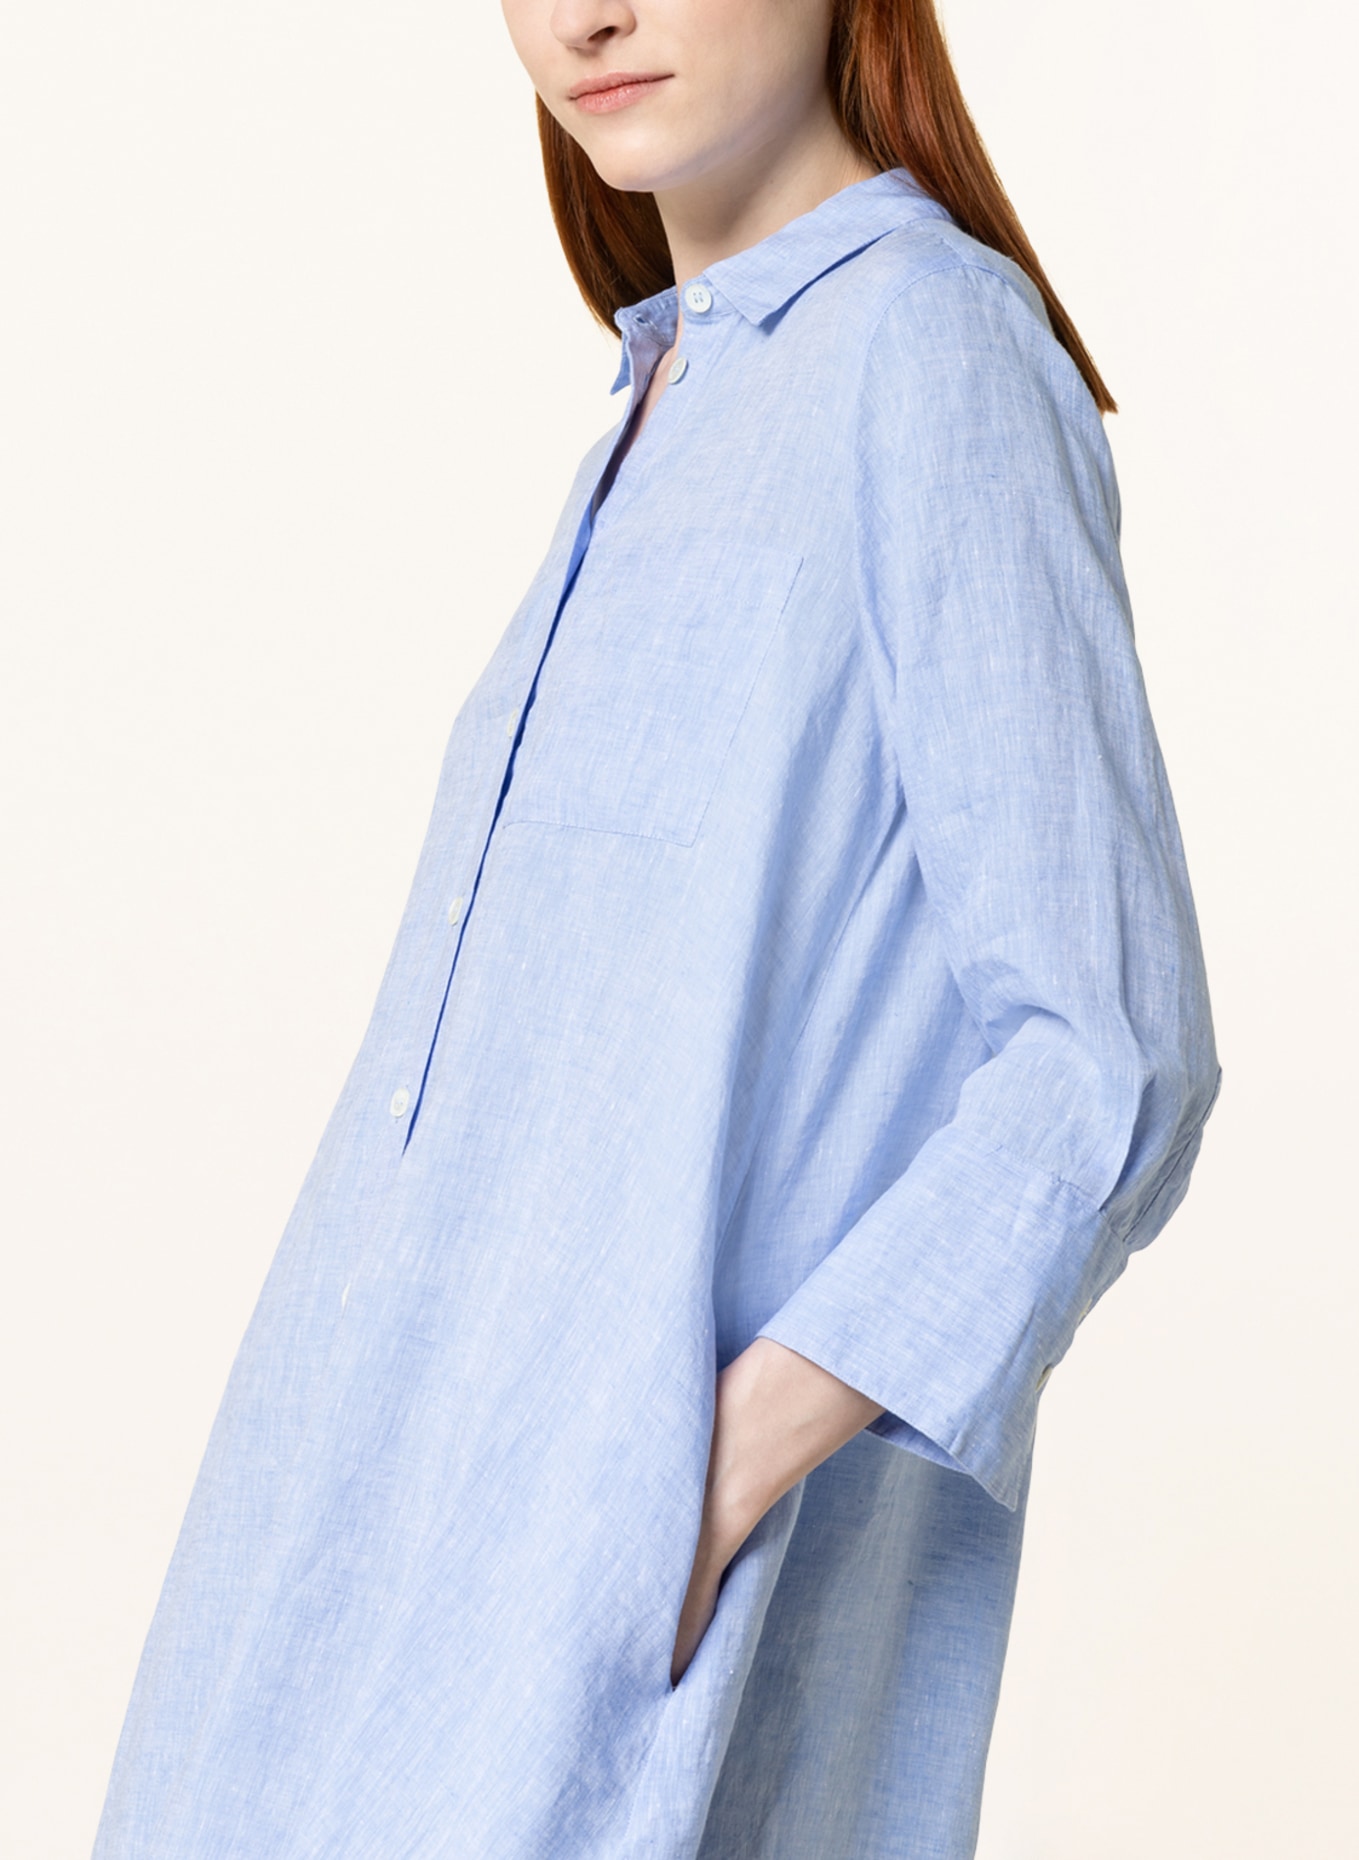 ROBERT FRIEDMAN Shirt dress LENA made of linen, Color: LIGHT BLUE (Image 4)